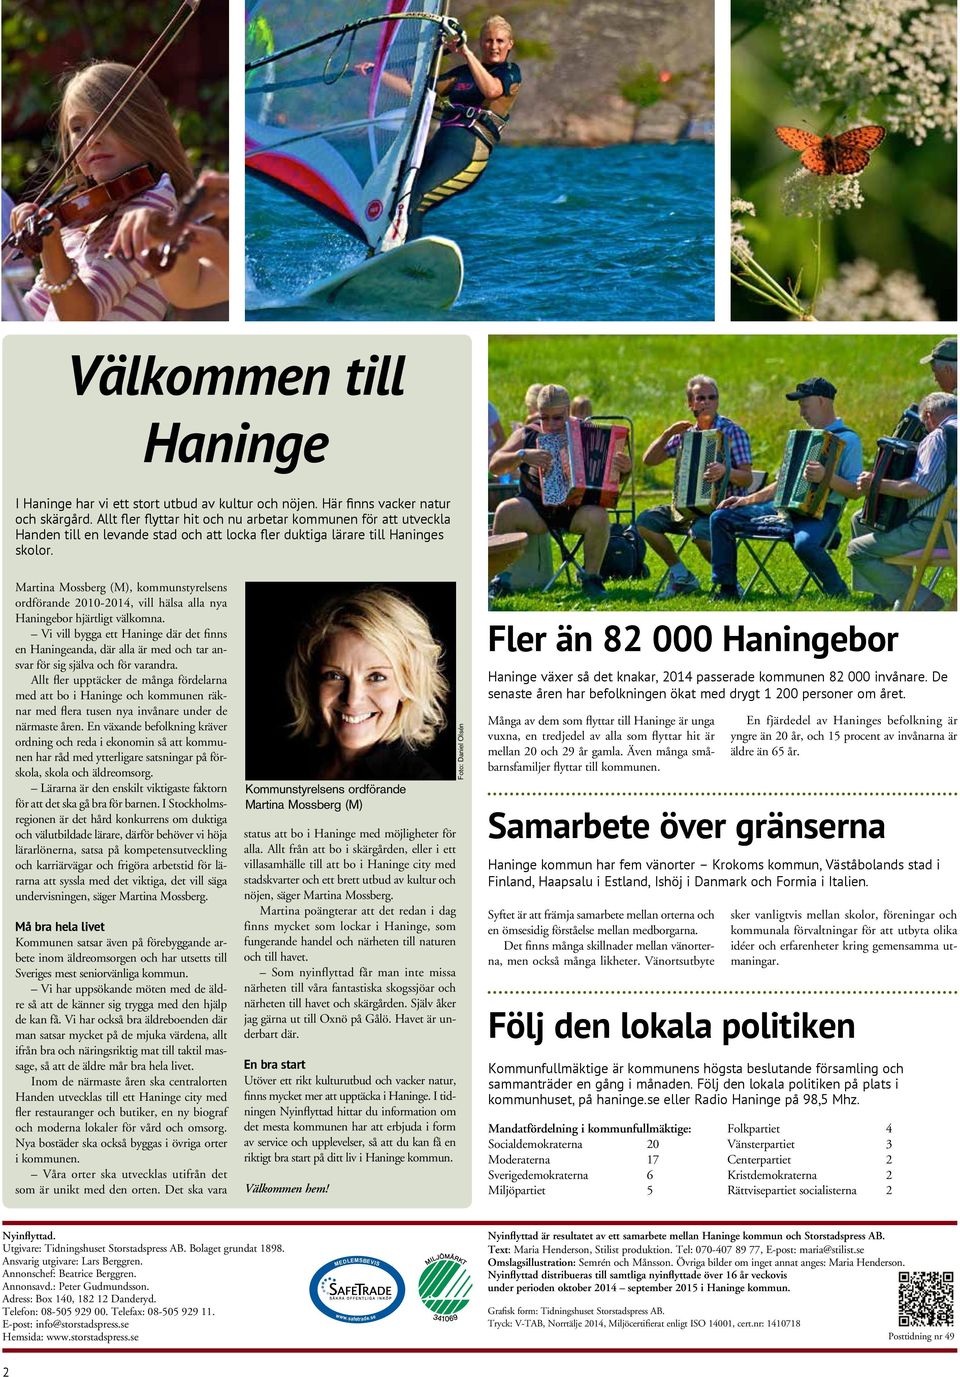 Martina Mossberg (M), kommunstyrelsens ordförande 2010-2014, vill hälsa alla nya Haningebor hjärtligt välkomna.